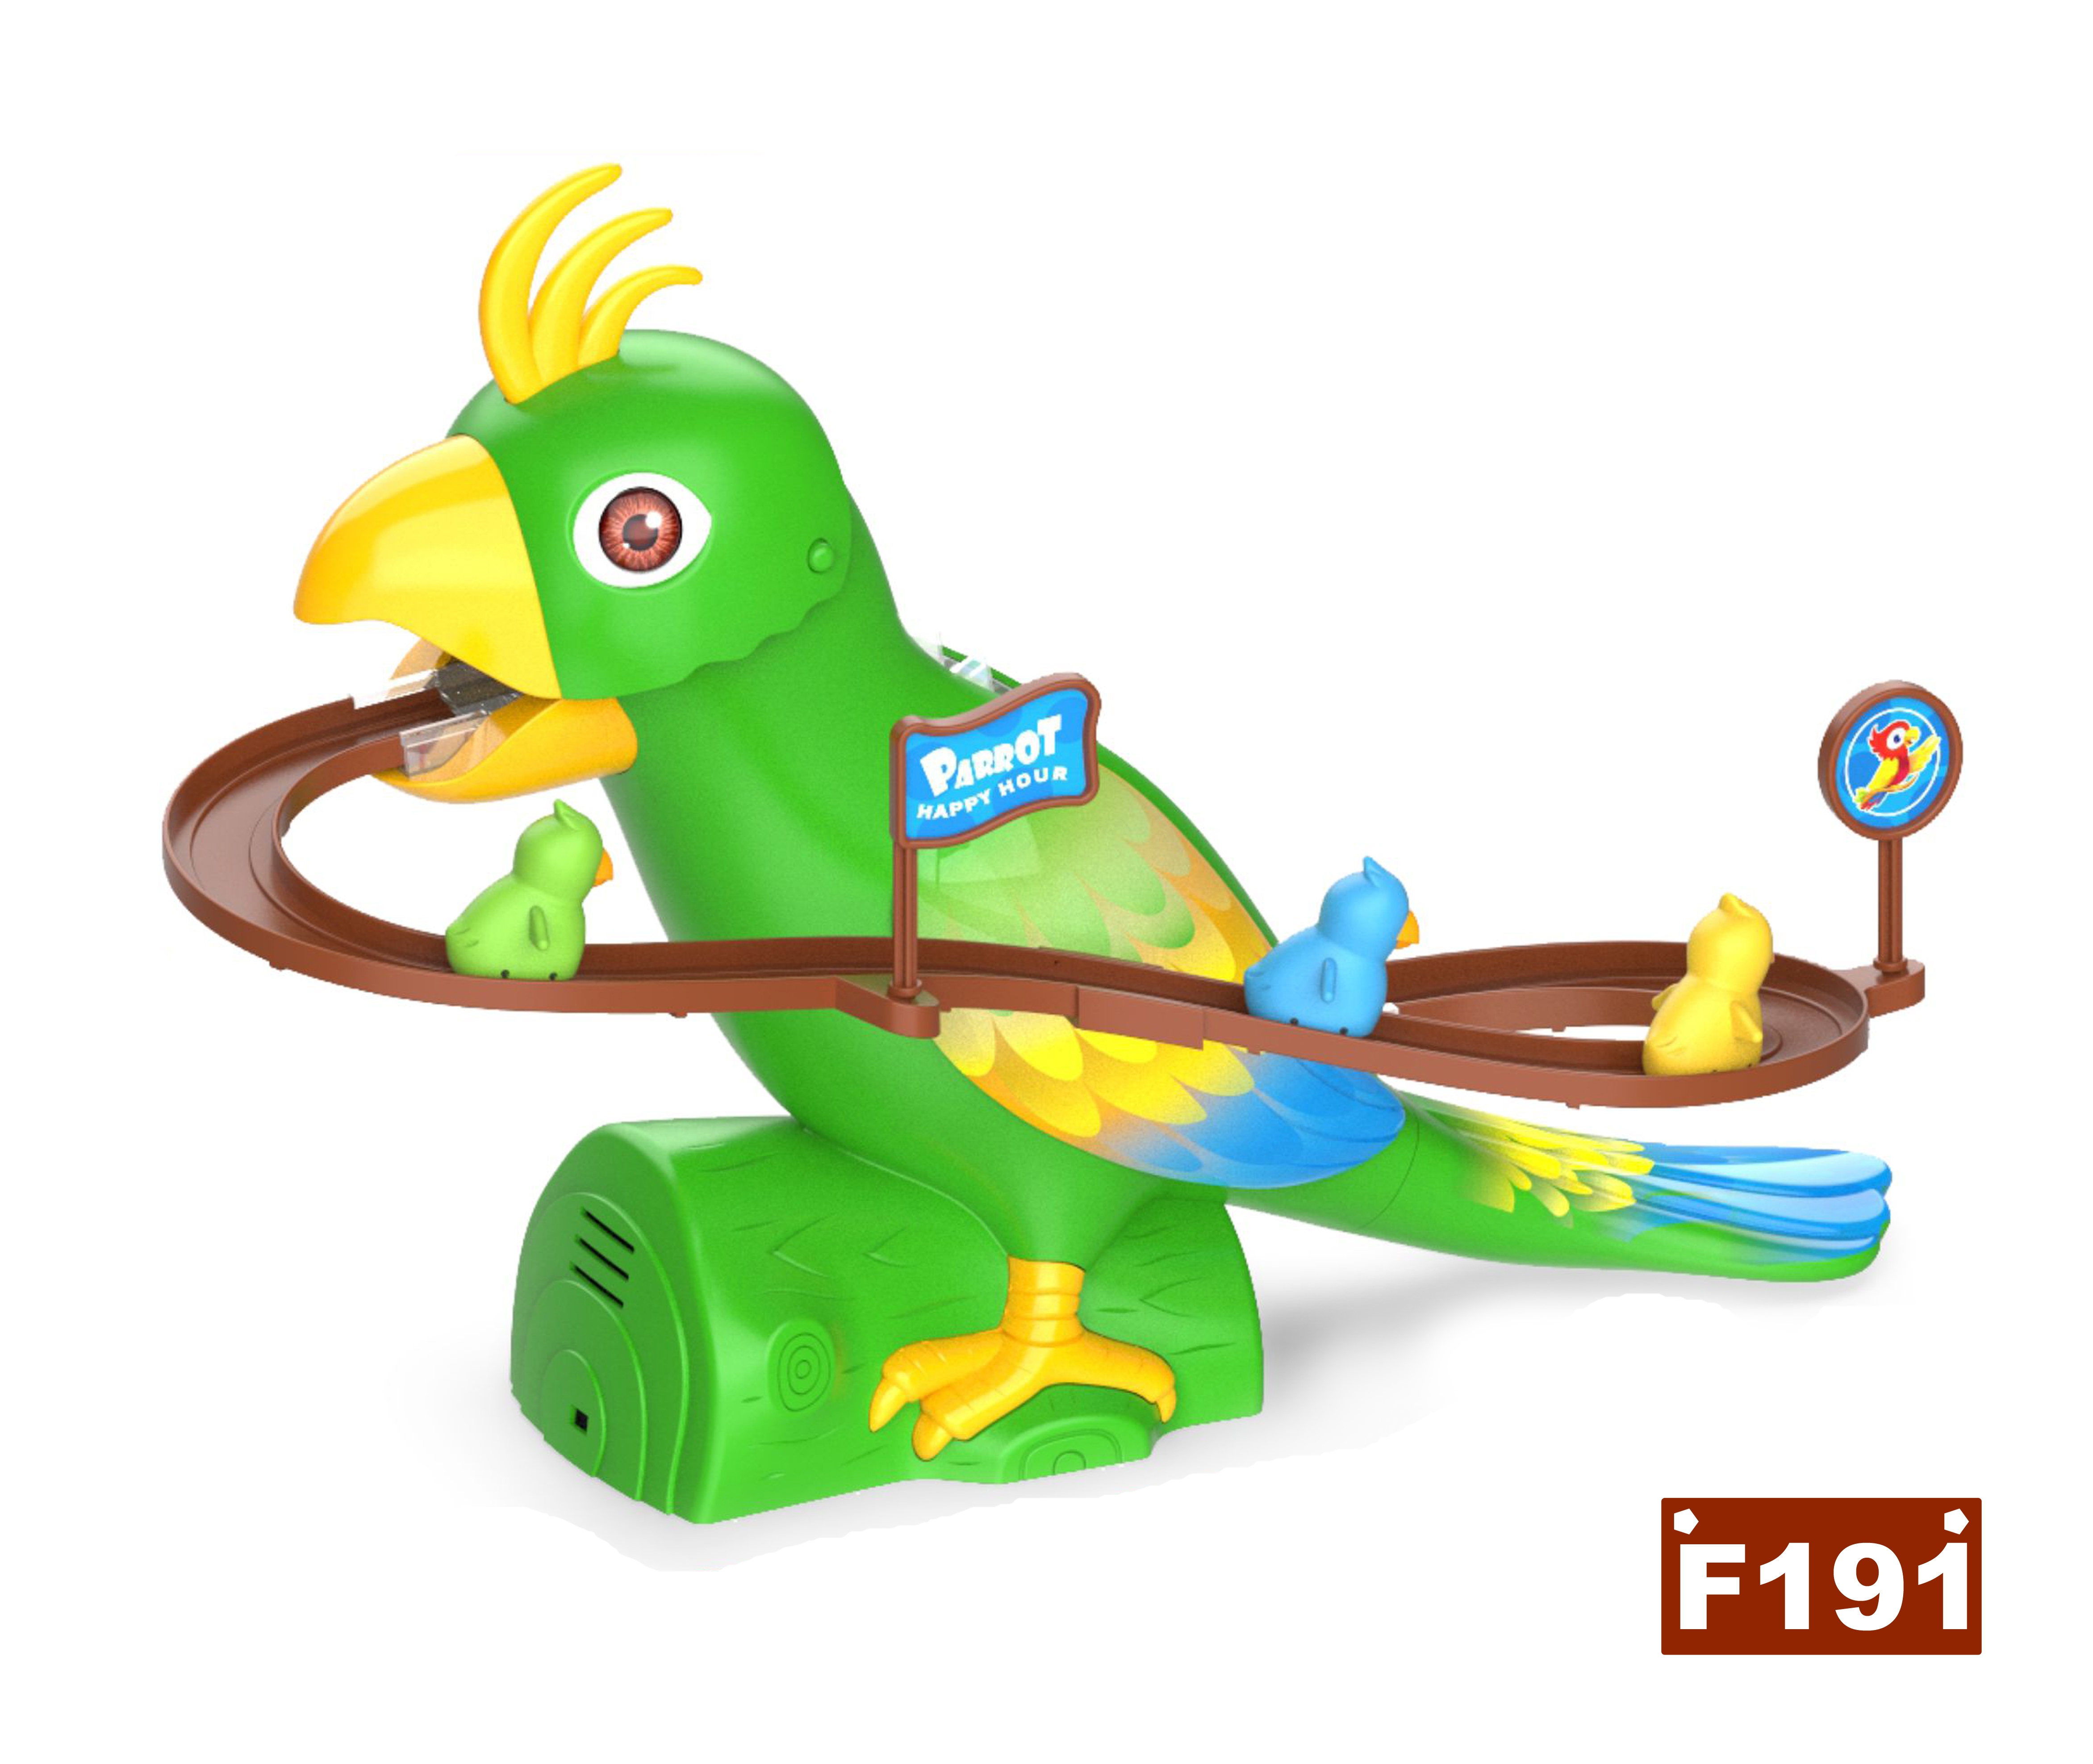 鹦鹉爬楼梯玩具电动鹦鹉滑梯轨道 玩具鹦鹉 电动玩具 智能玩具 新款外贸玩具 JUGUETE产品图